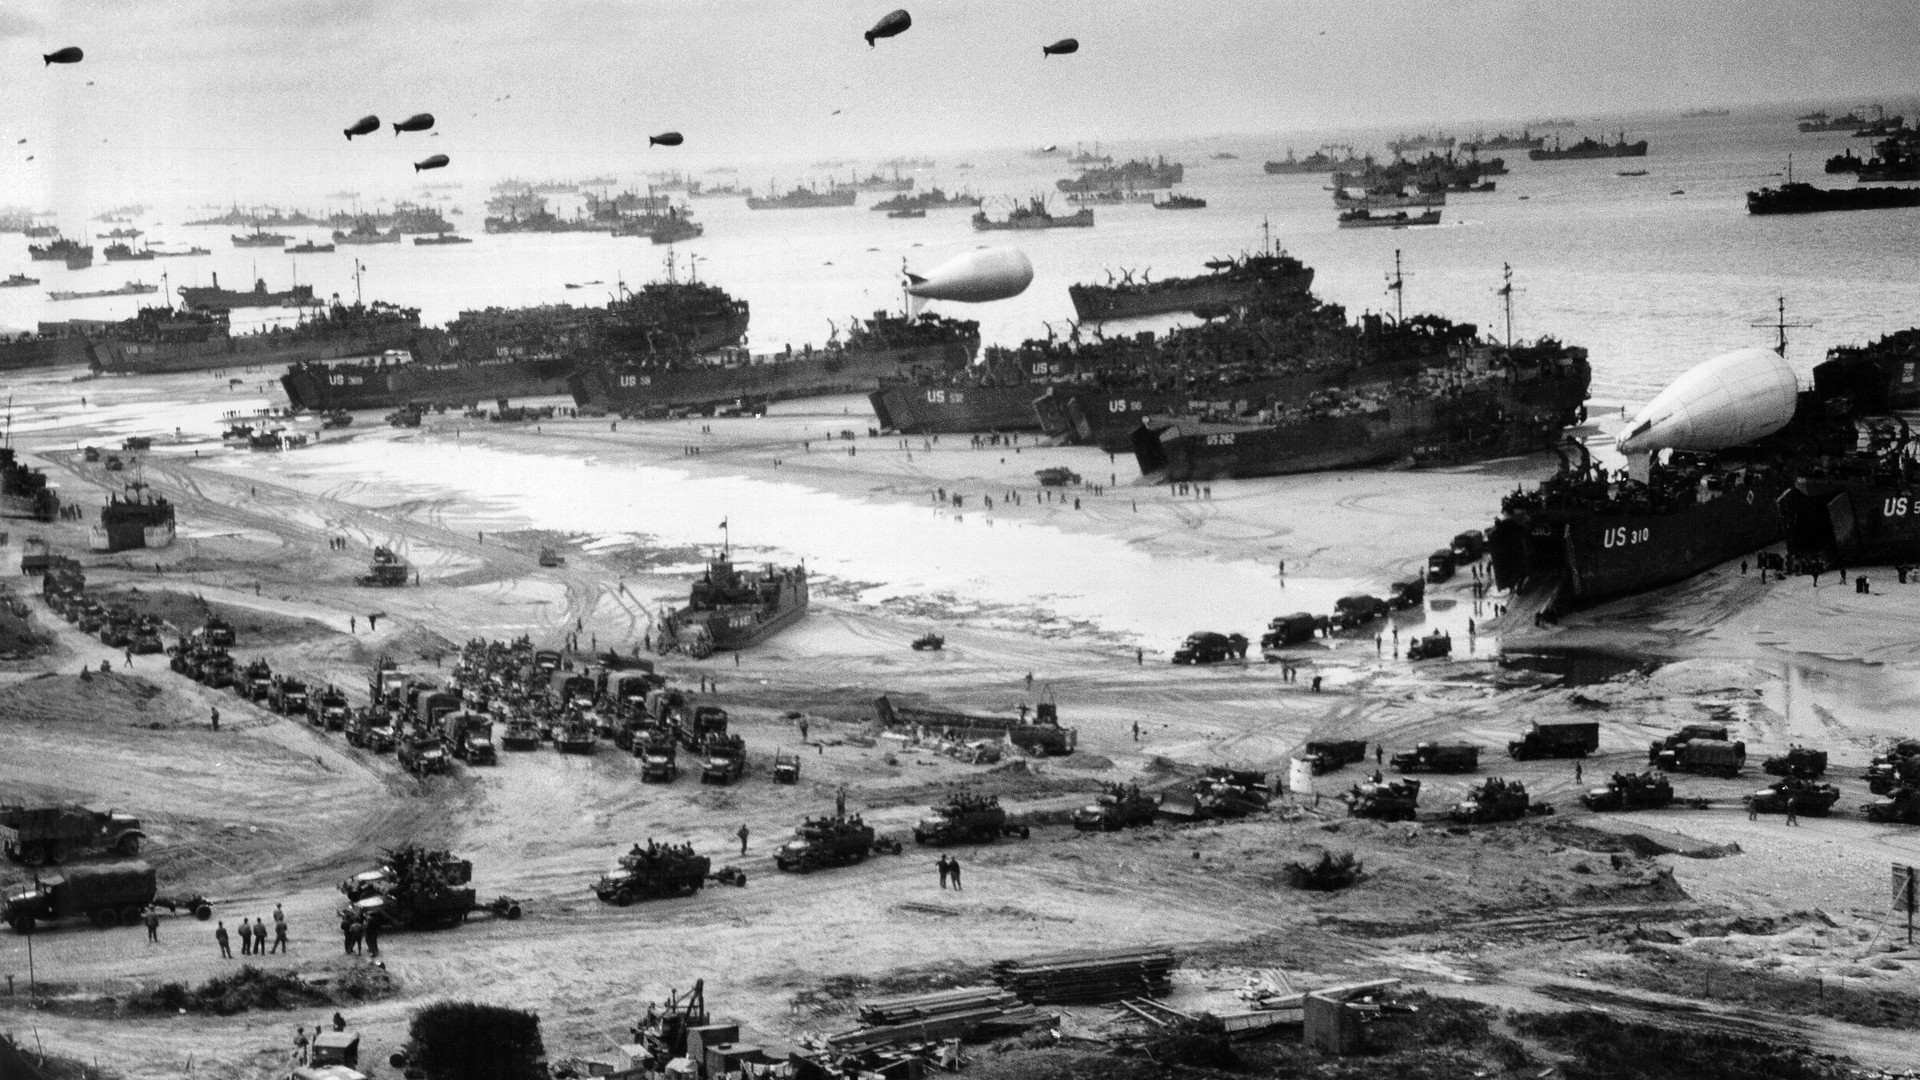 Aniversario del desembarco en Normandia V2BEBM6PPNA6NIPY4CG6IR5CHI